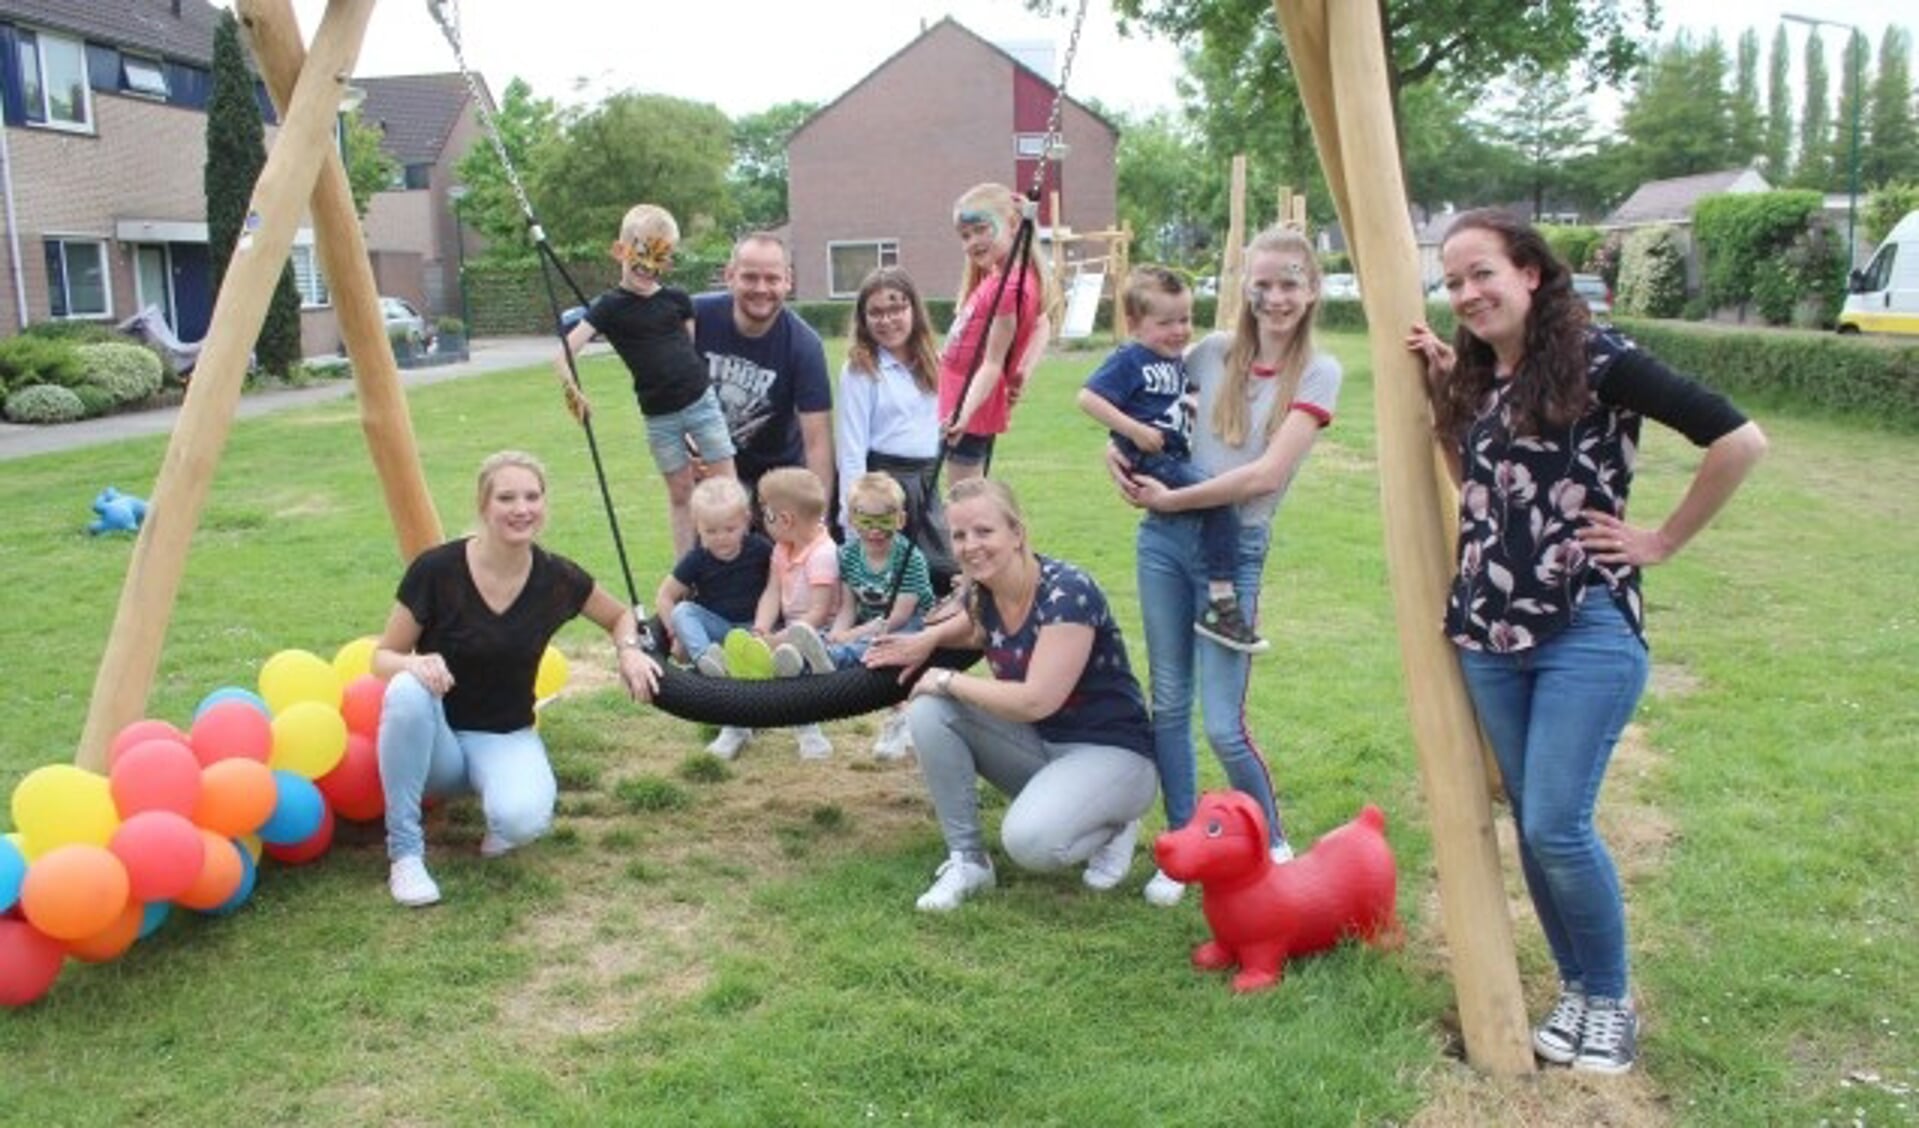 De initiatiefnemers en hun kinderen – omwonenden van het veldje aan de Rietzangerlaan – zijn blij met het speelveld dat ze konden realiseren met geld uit het wijkbudget. (Foto: Lysette Verwegen)